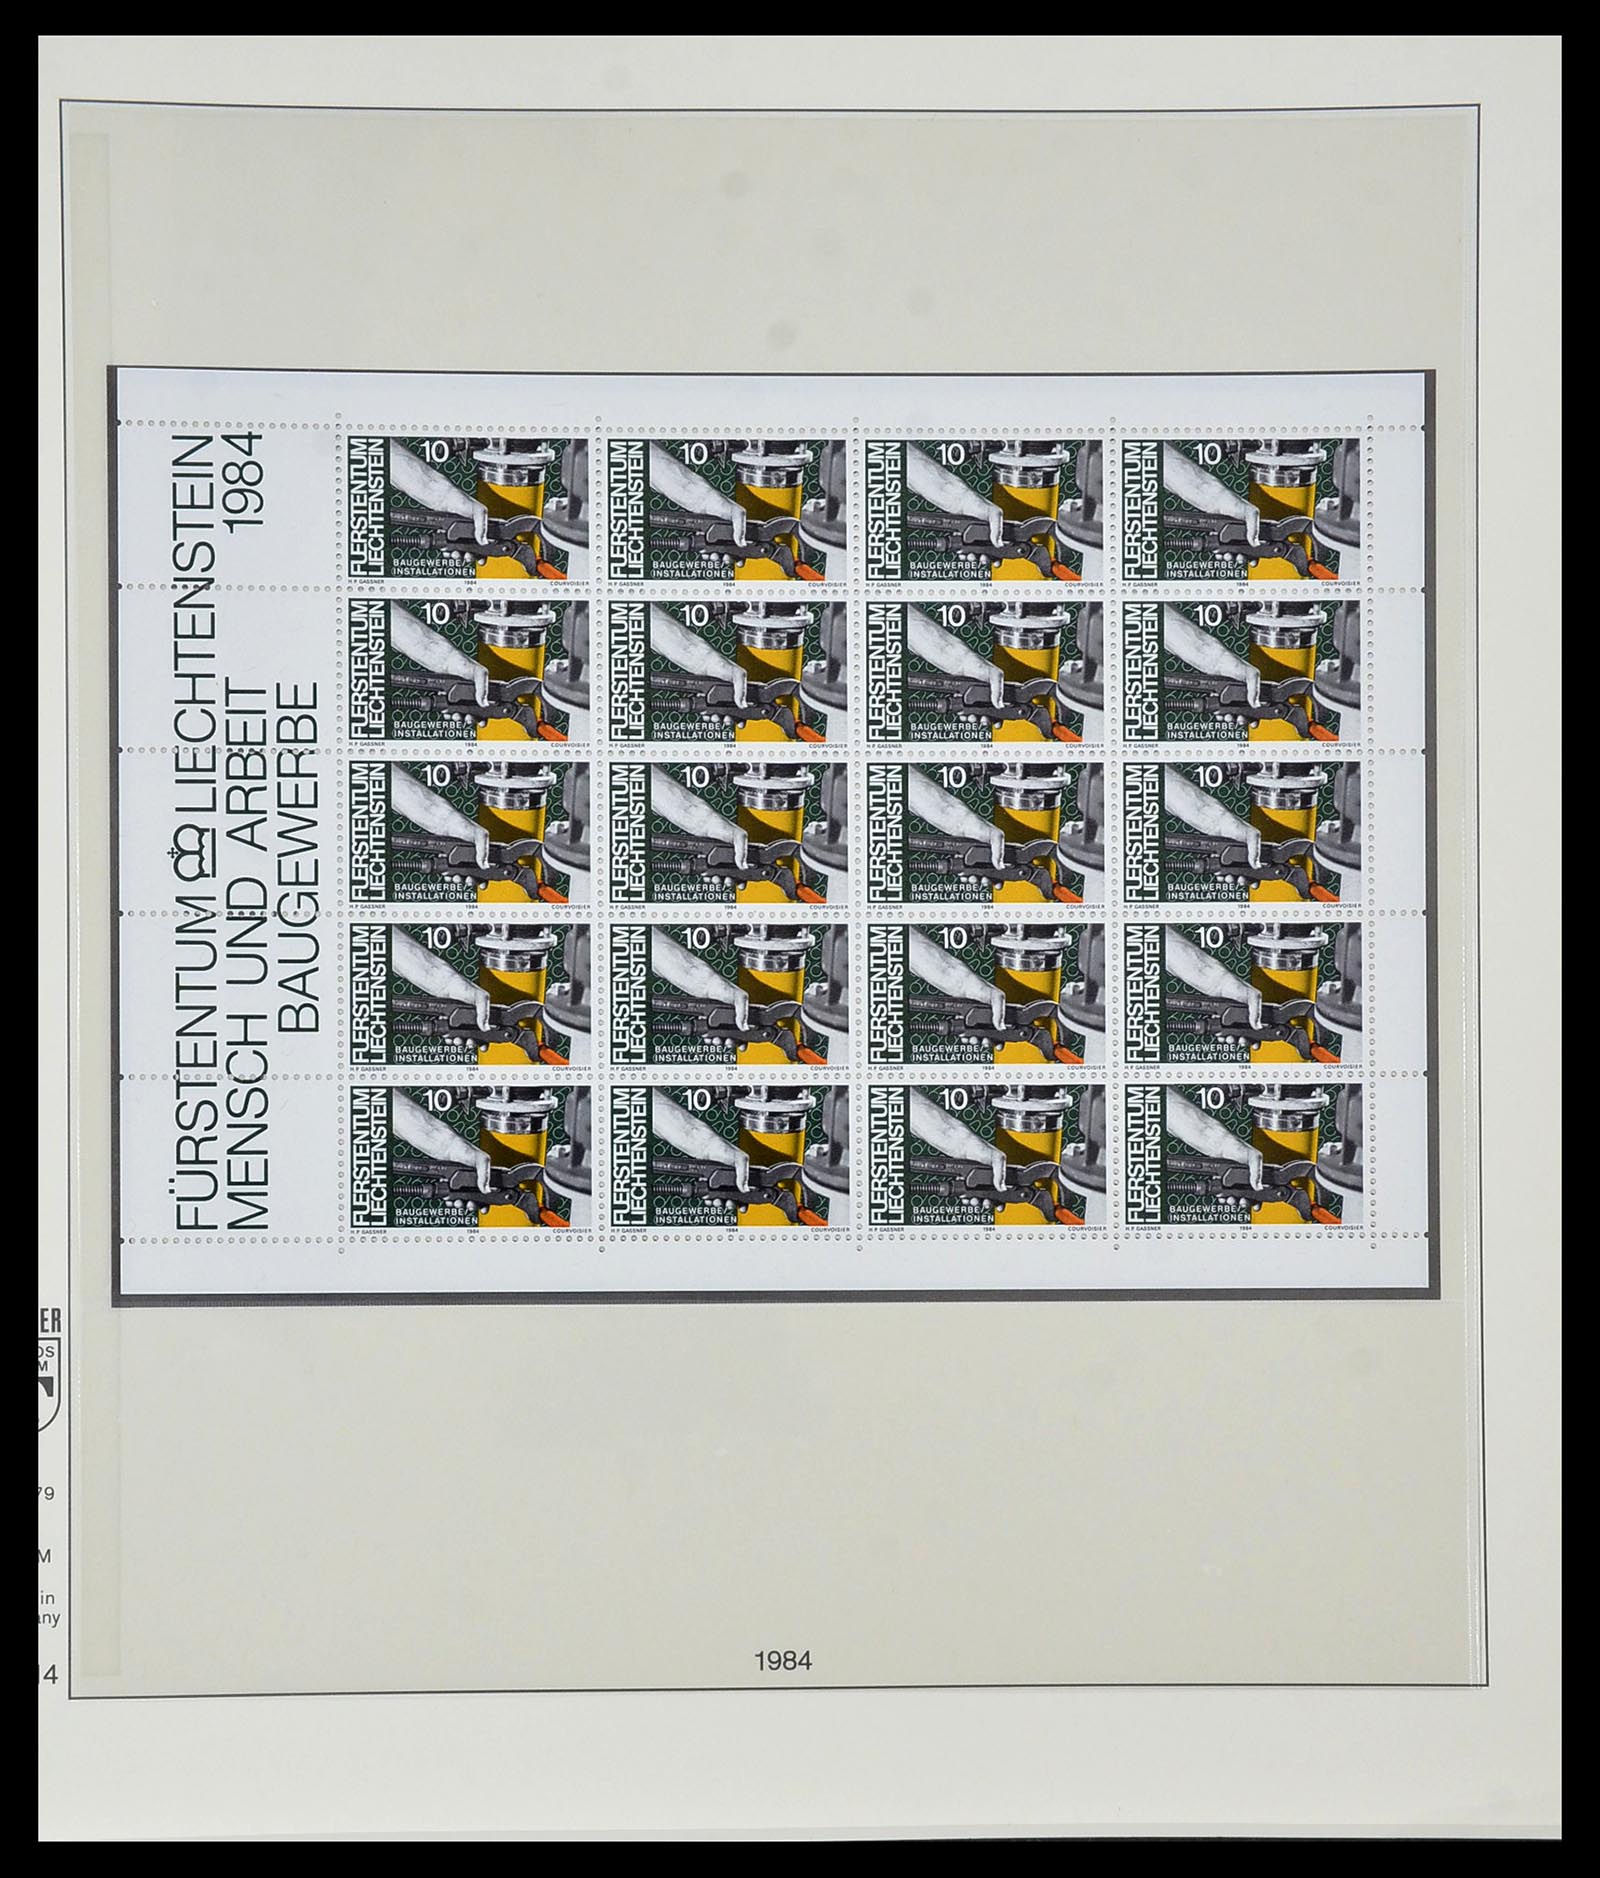 34187 060 - Stamp collection 34187 Liechtenstein kleinbogen 1982-1995.